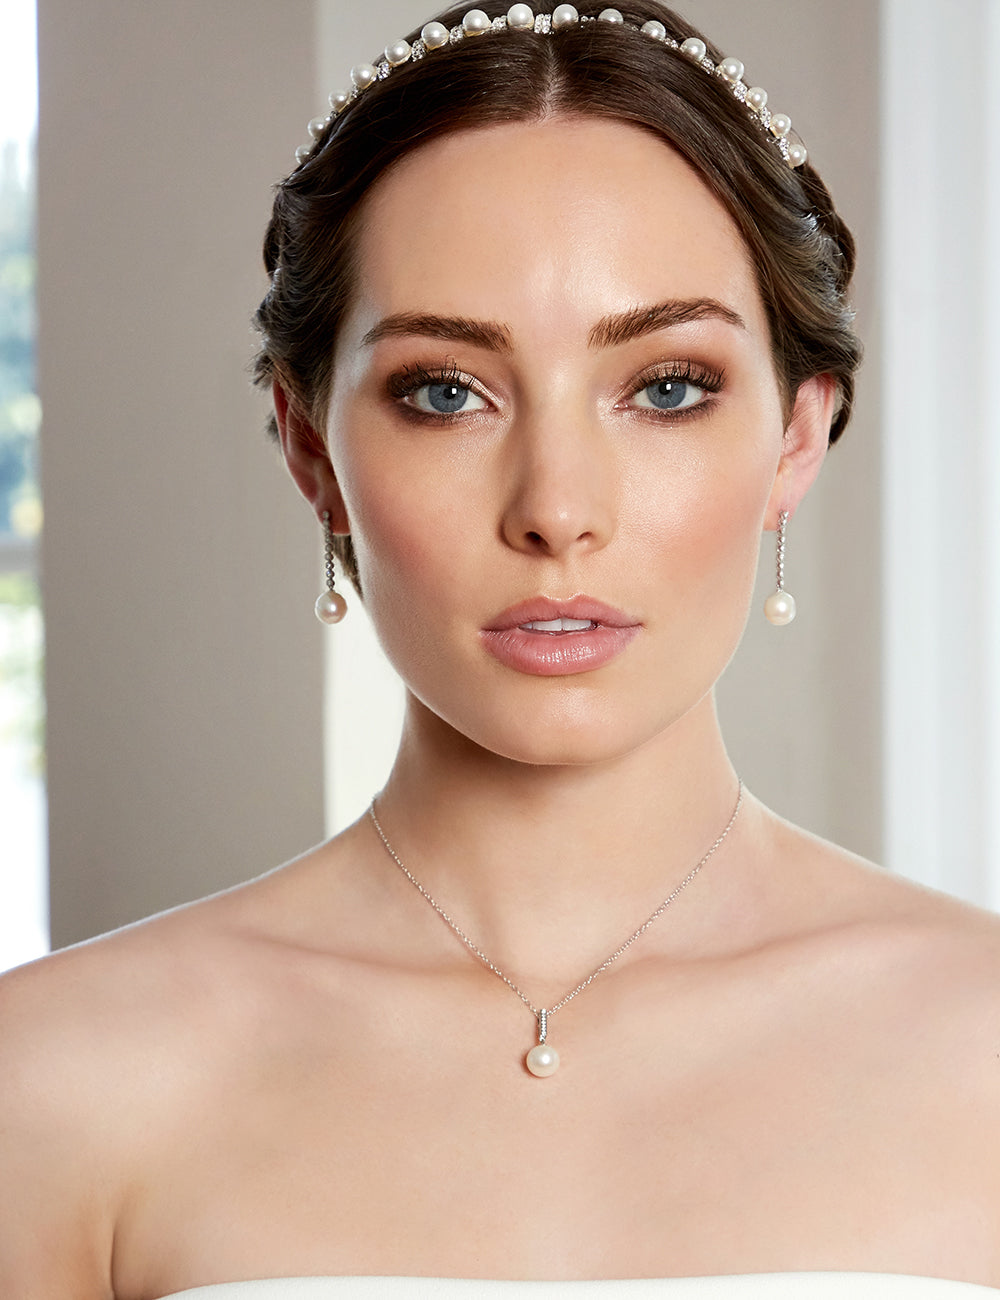 Best Pearl Earrings for Diamond Face Shape